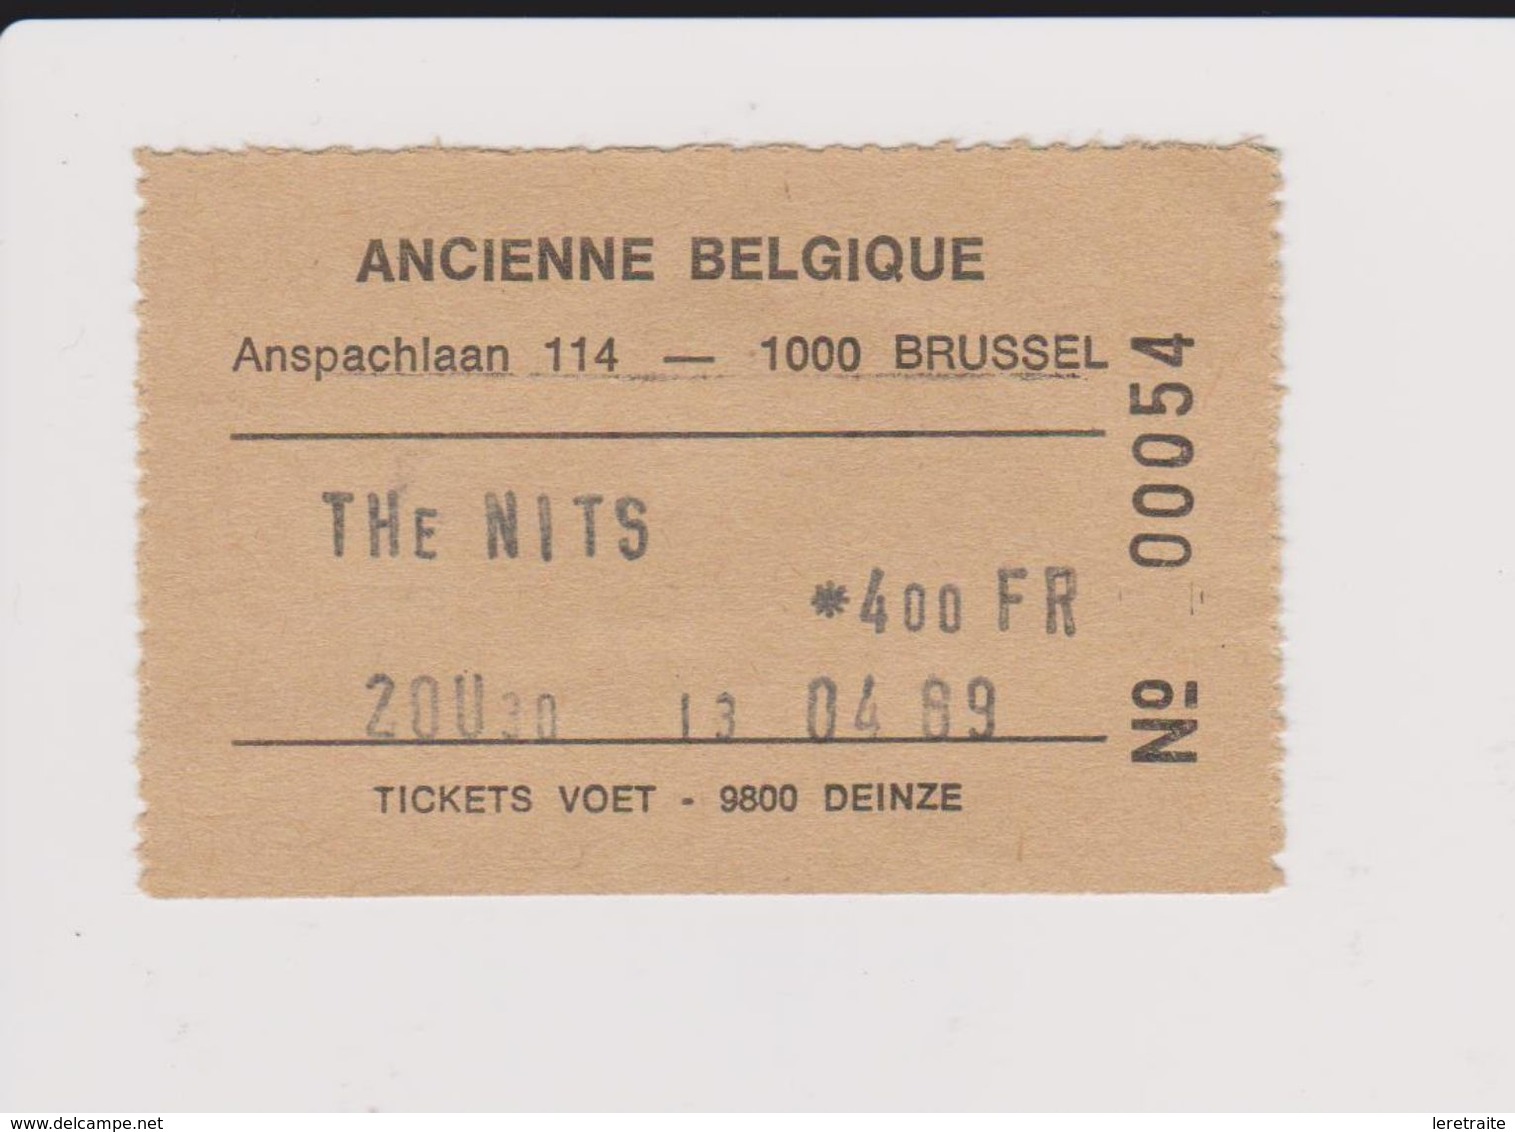 Concert THE NITS 13 Avril 1989, Ancienne Belgique. - Tickets De Concerts